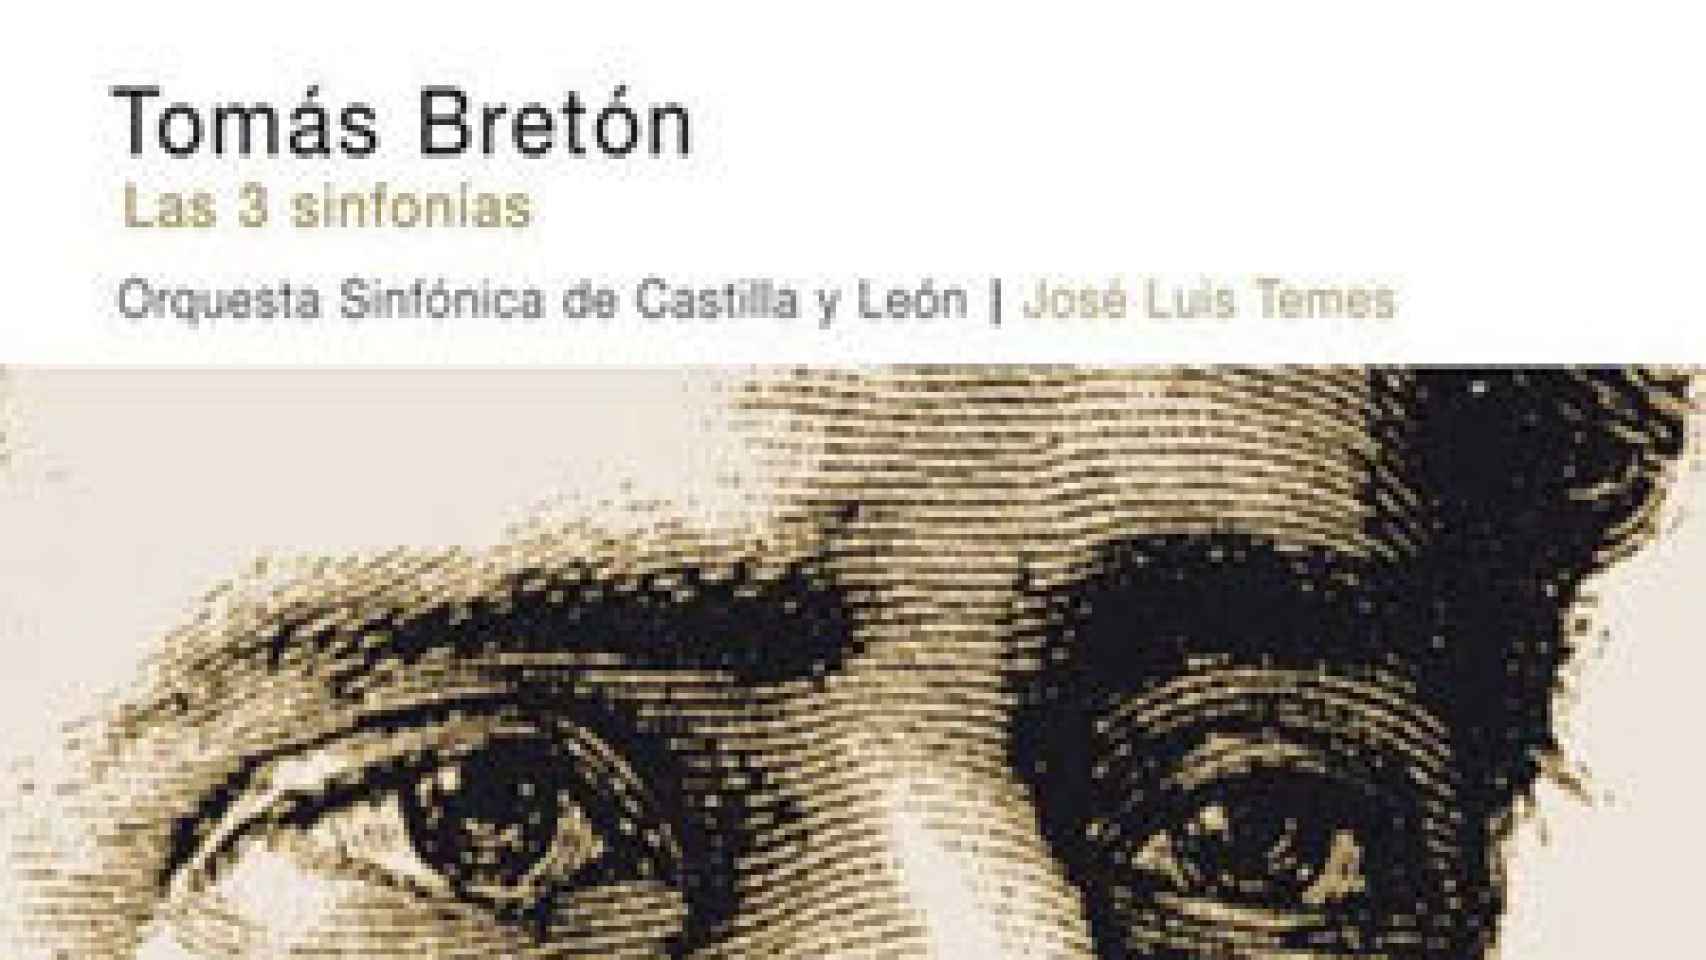 Image: Tomás Bretón: Tres sinfonías